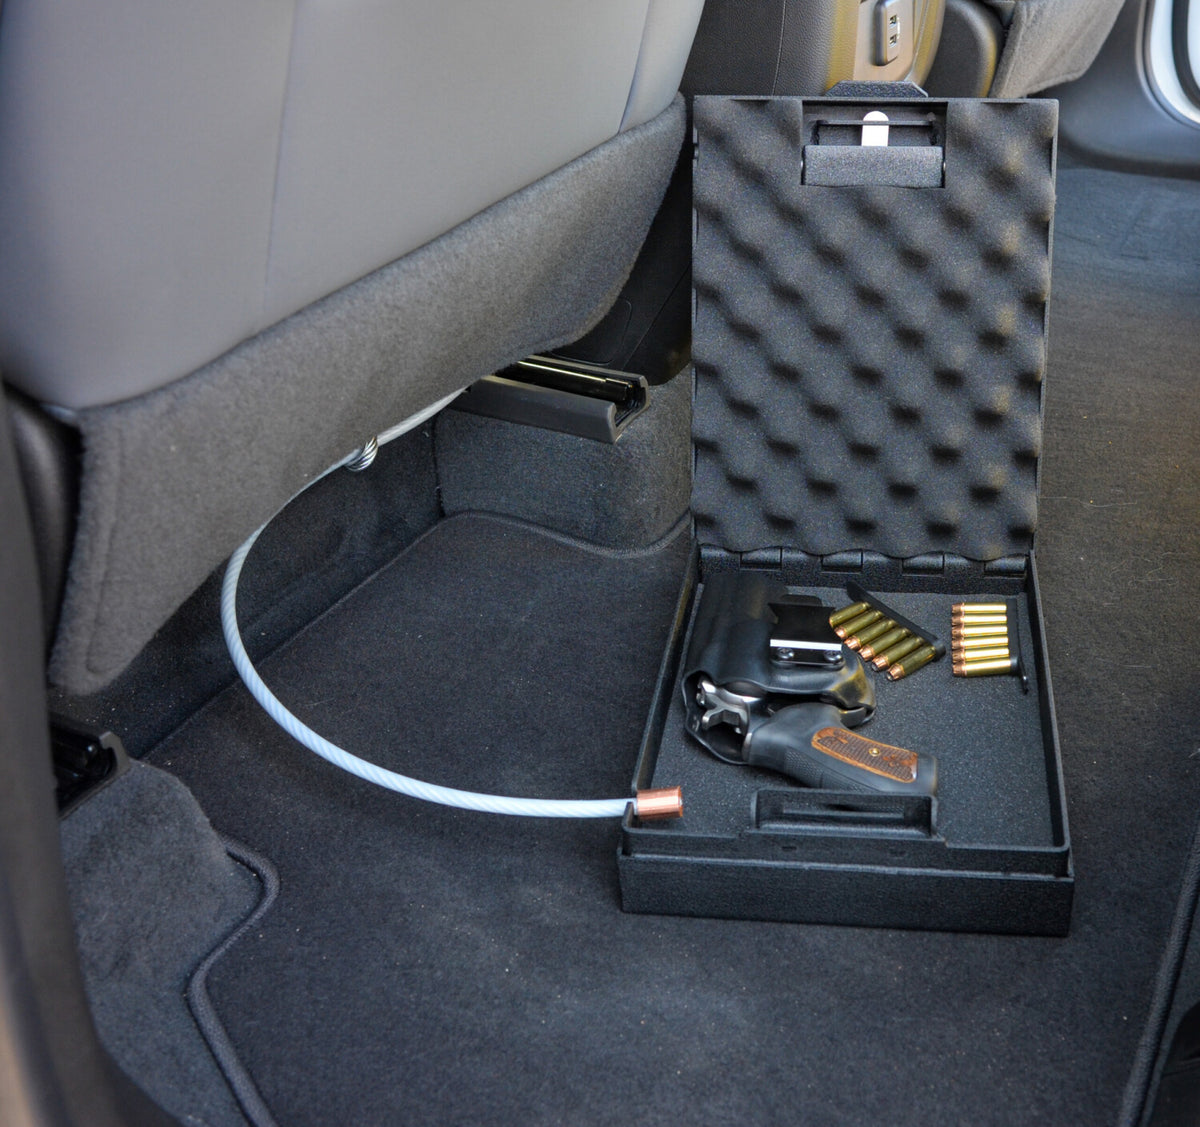 Steelhead Large HD Pistol Box Secured in Vehicle Open 2